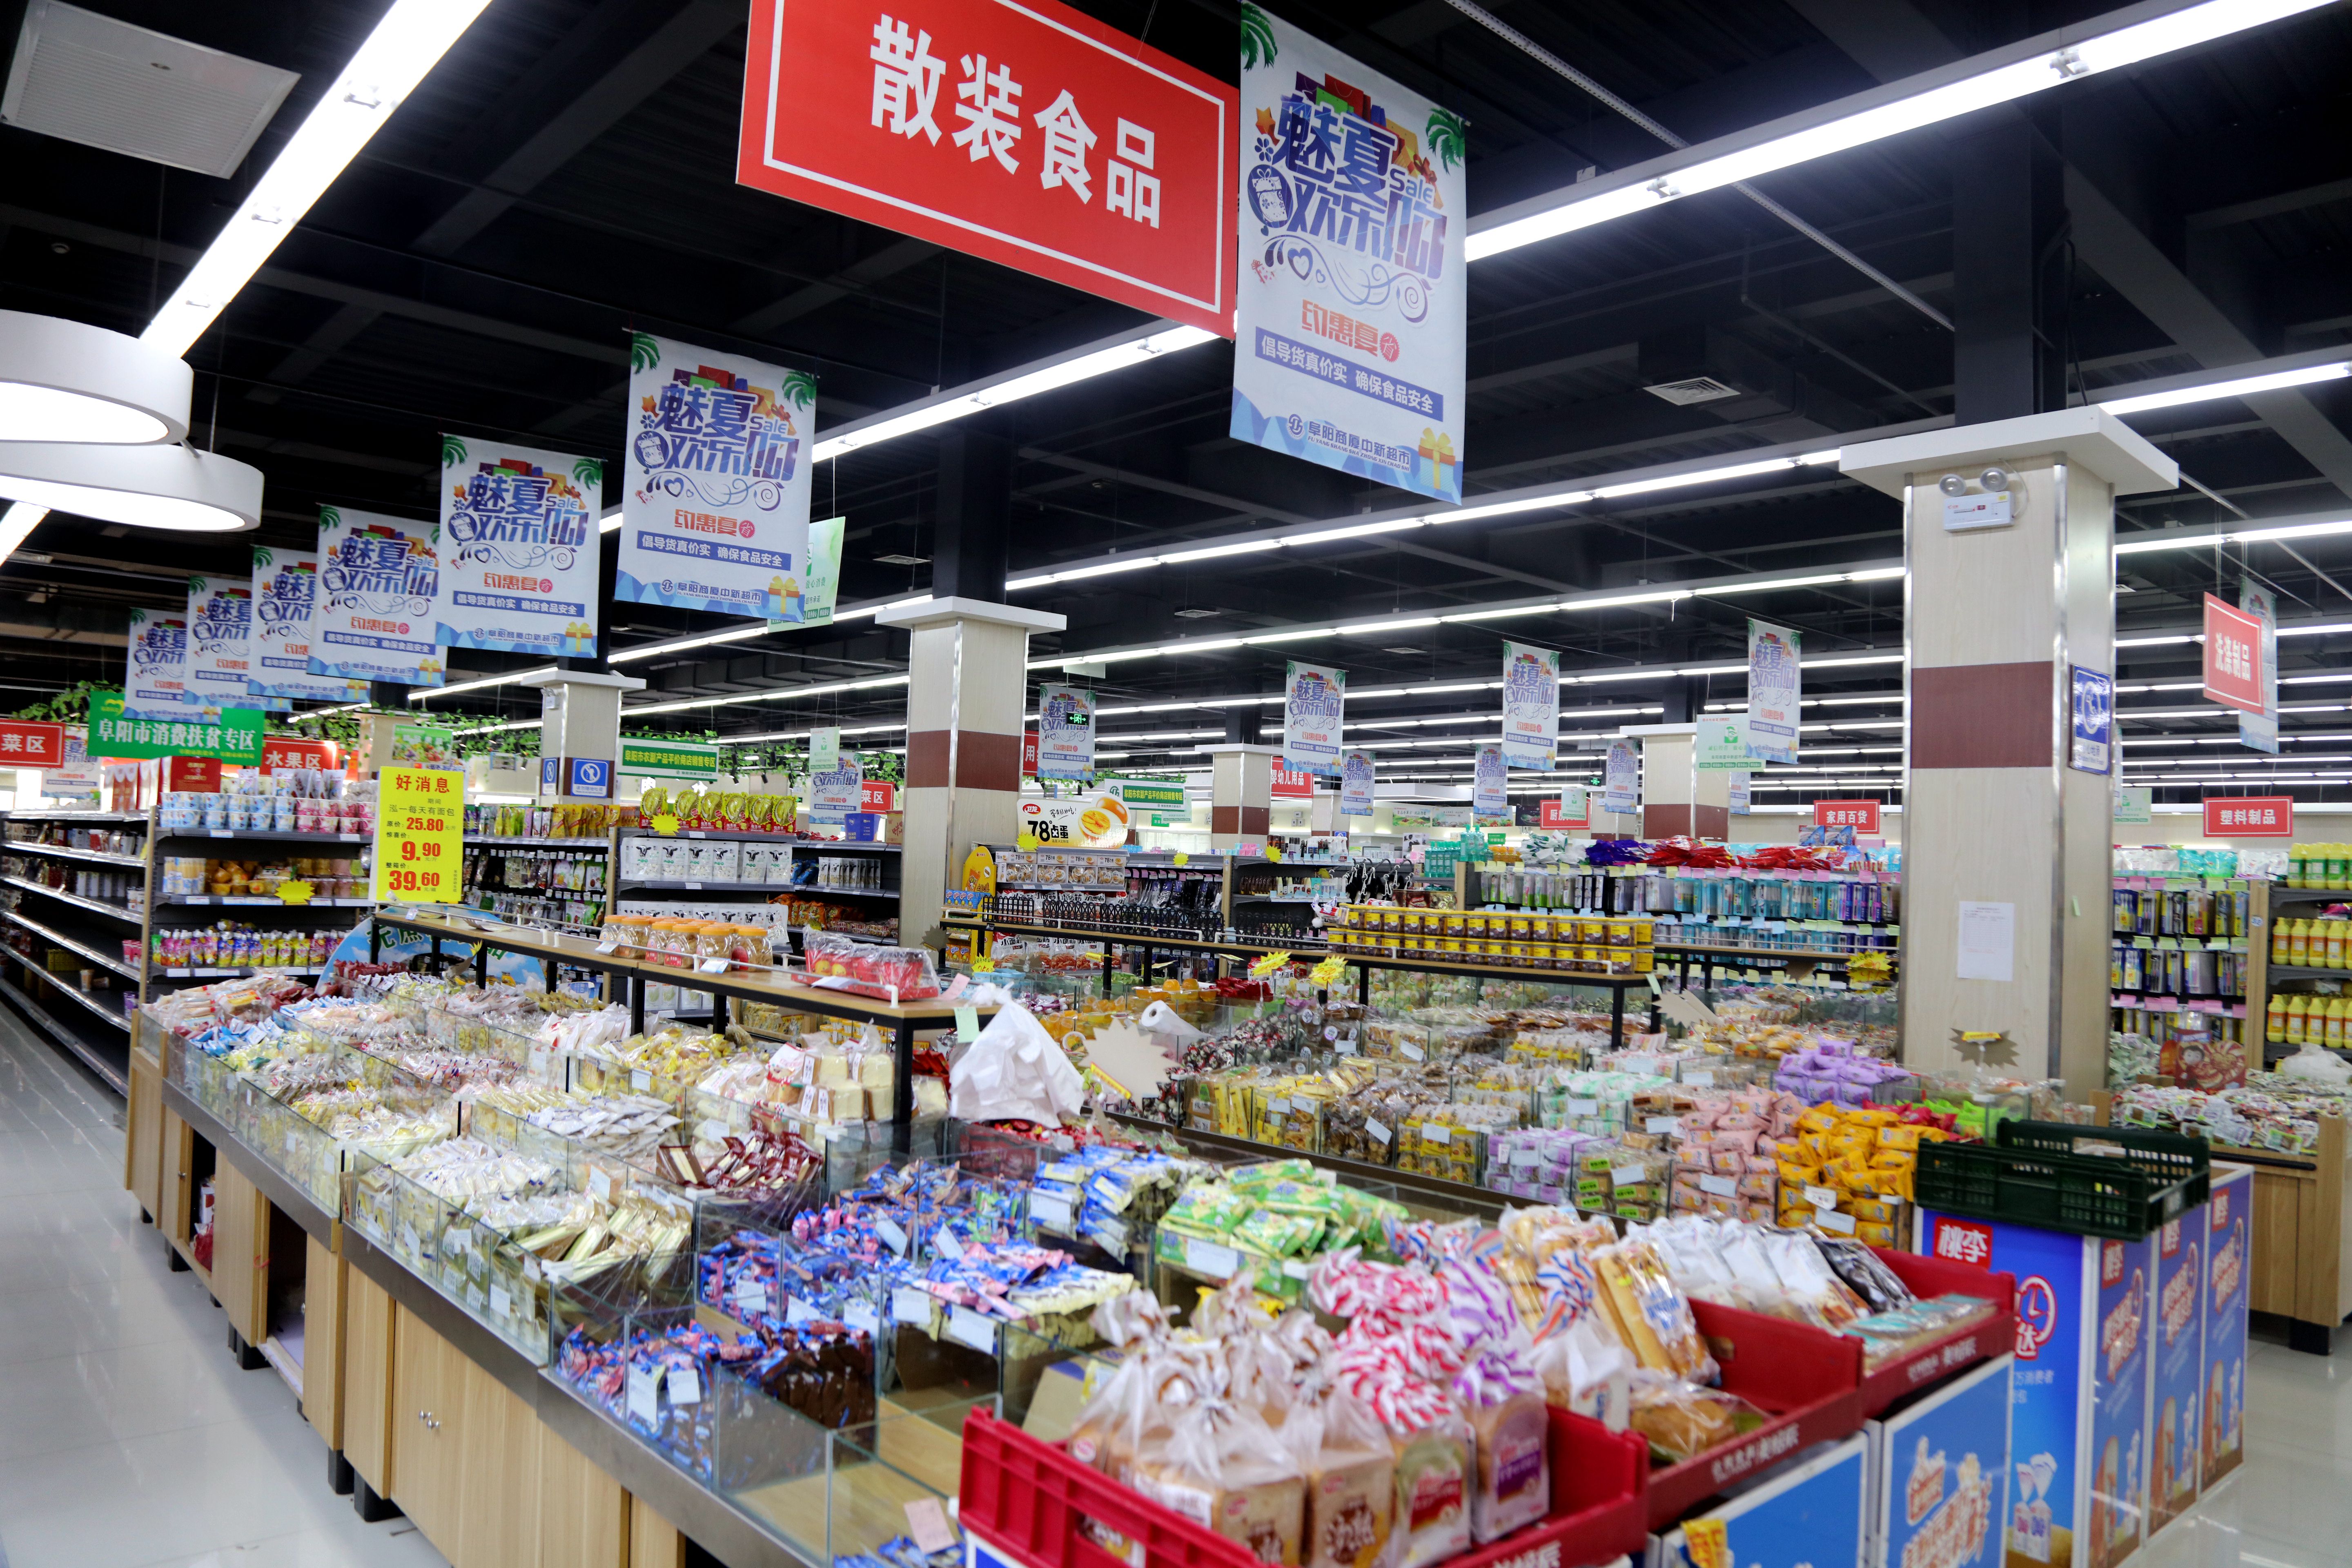 系统重装升级改造阜阳商厦中新超市进入快速发展新时期